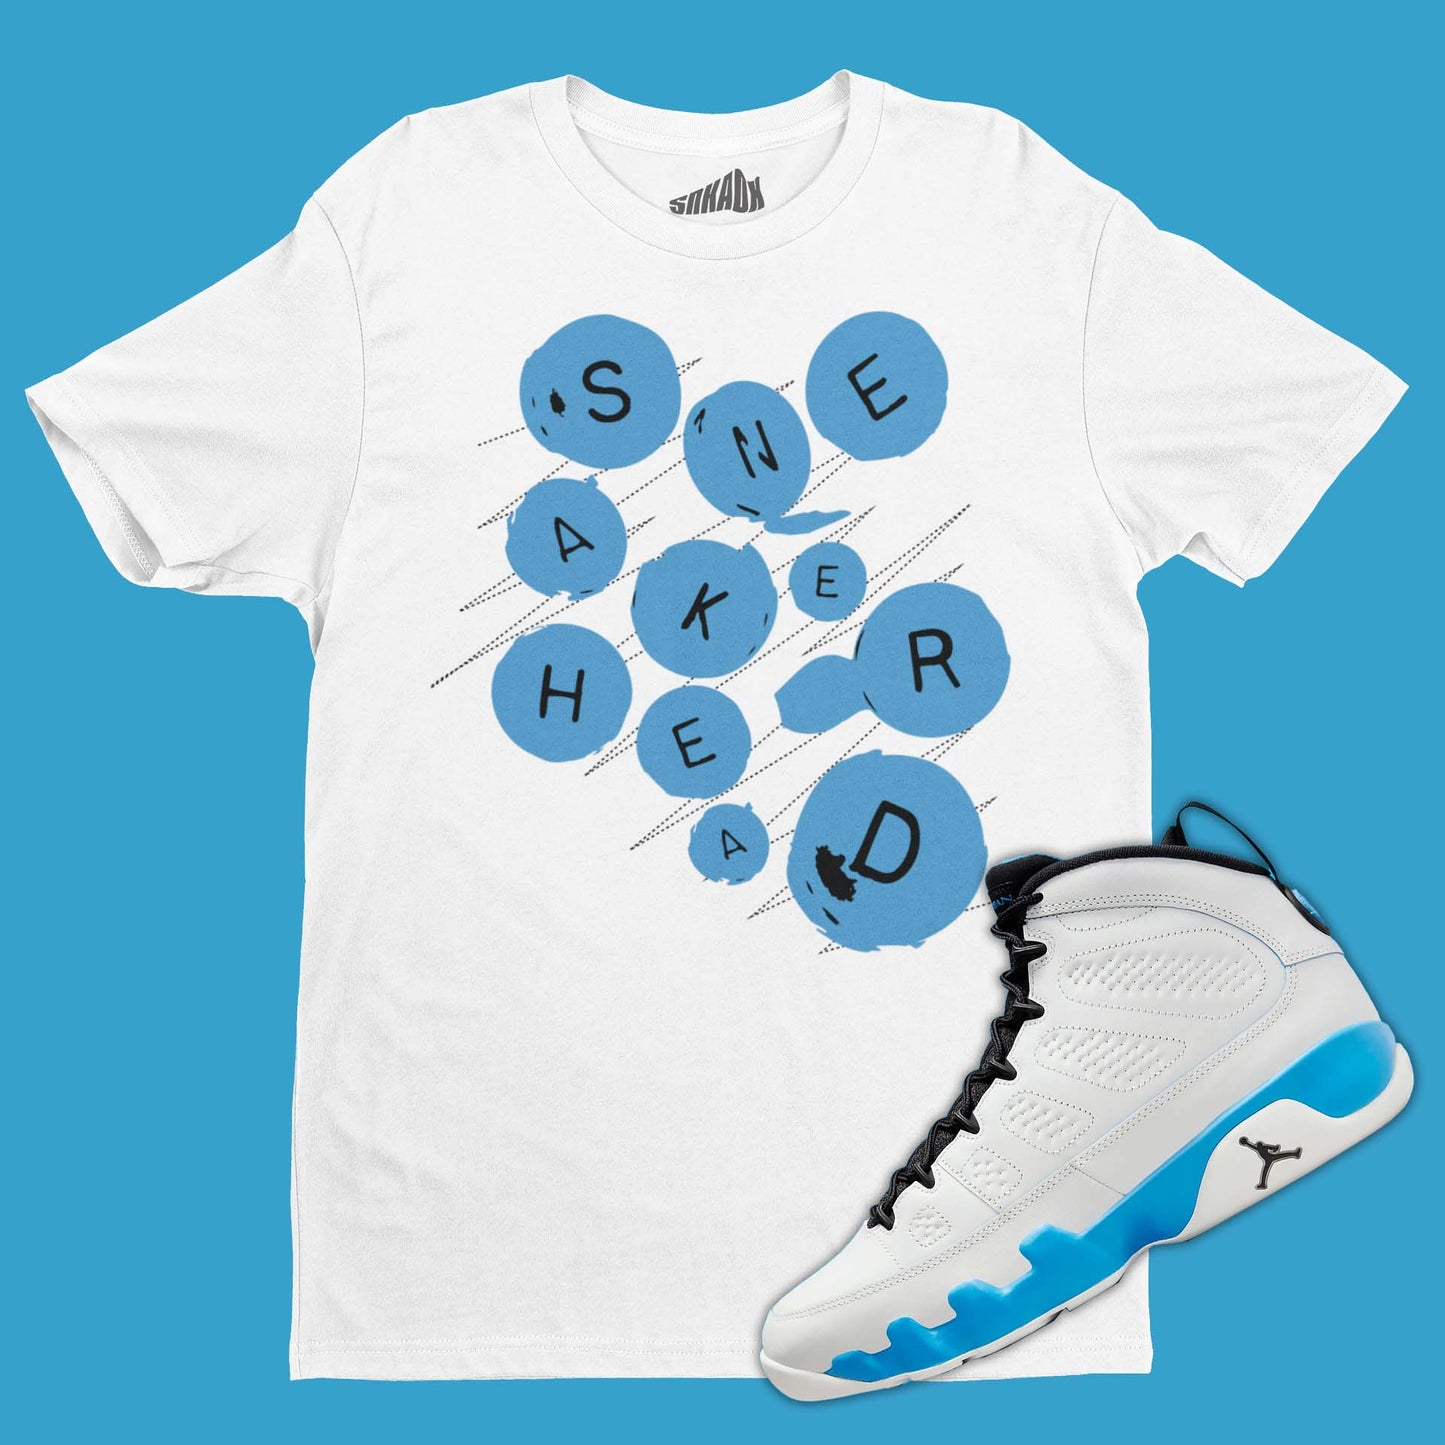 Sneakerhead Buttons T-Shirt Matching Air Racer Blue 3s Jordan Stealth Sneaker Tees EAT